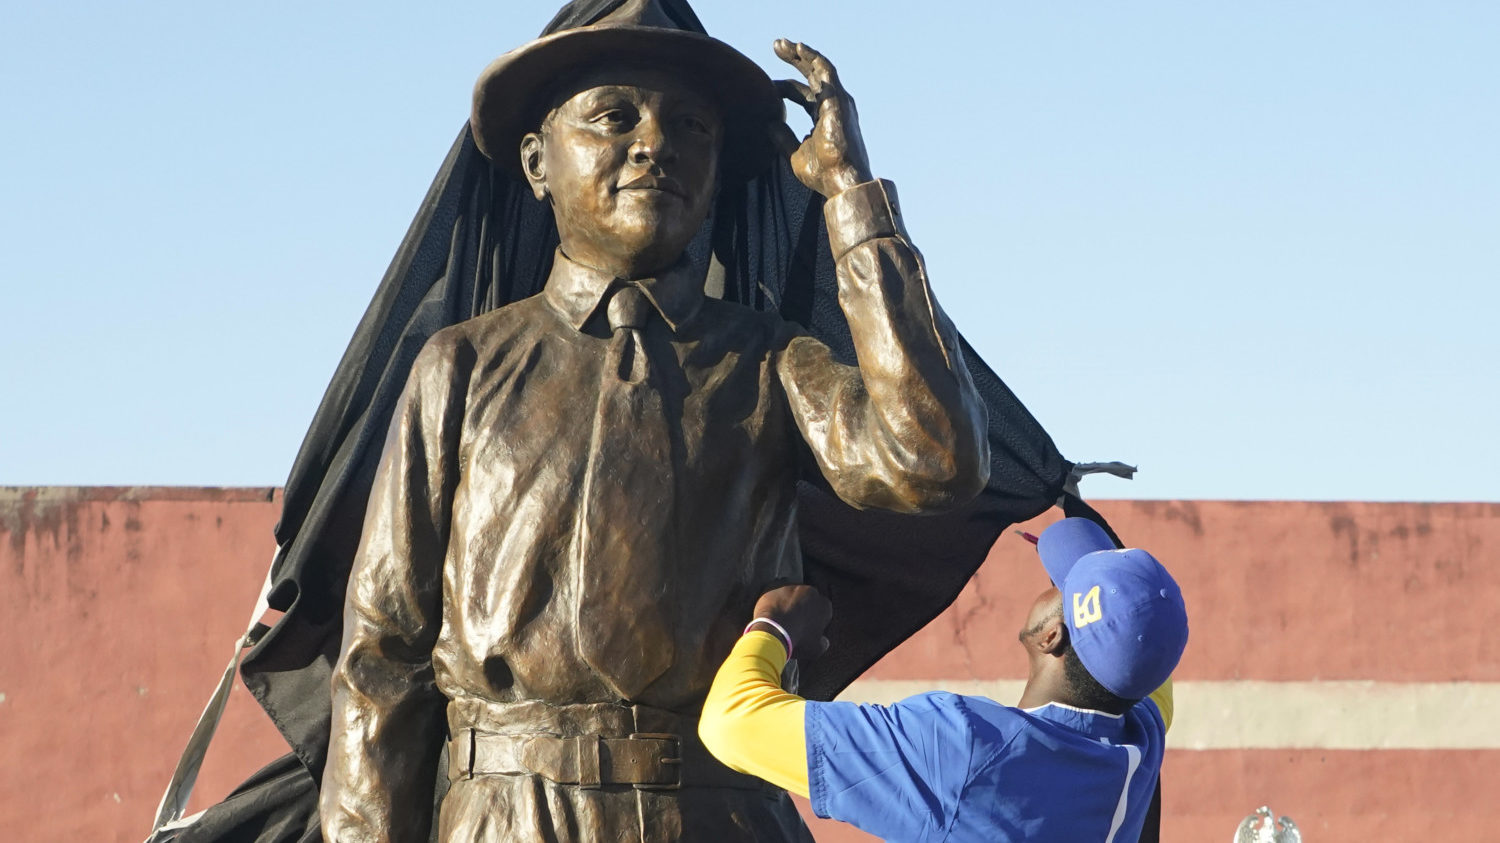 Worker unveils Emmett Till Statue